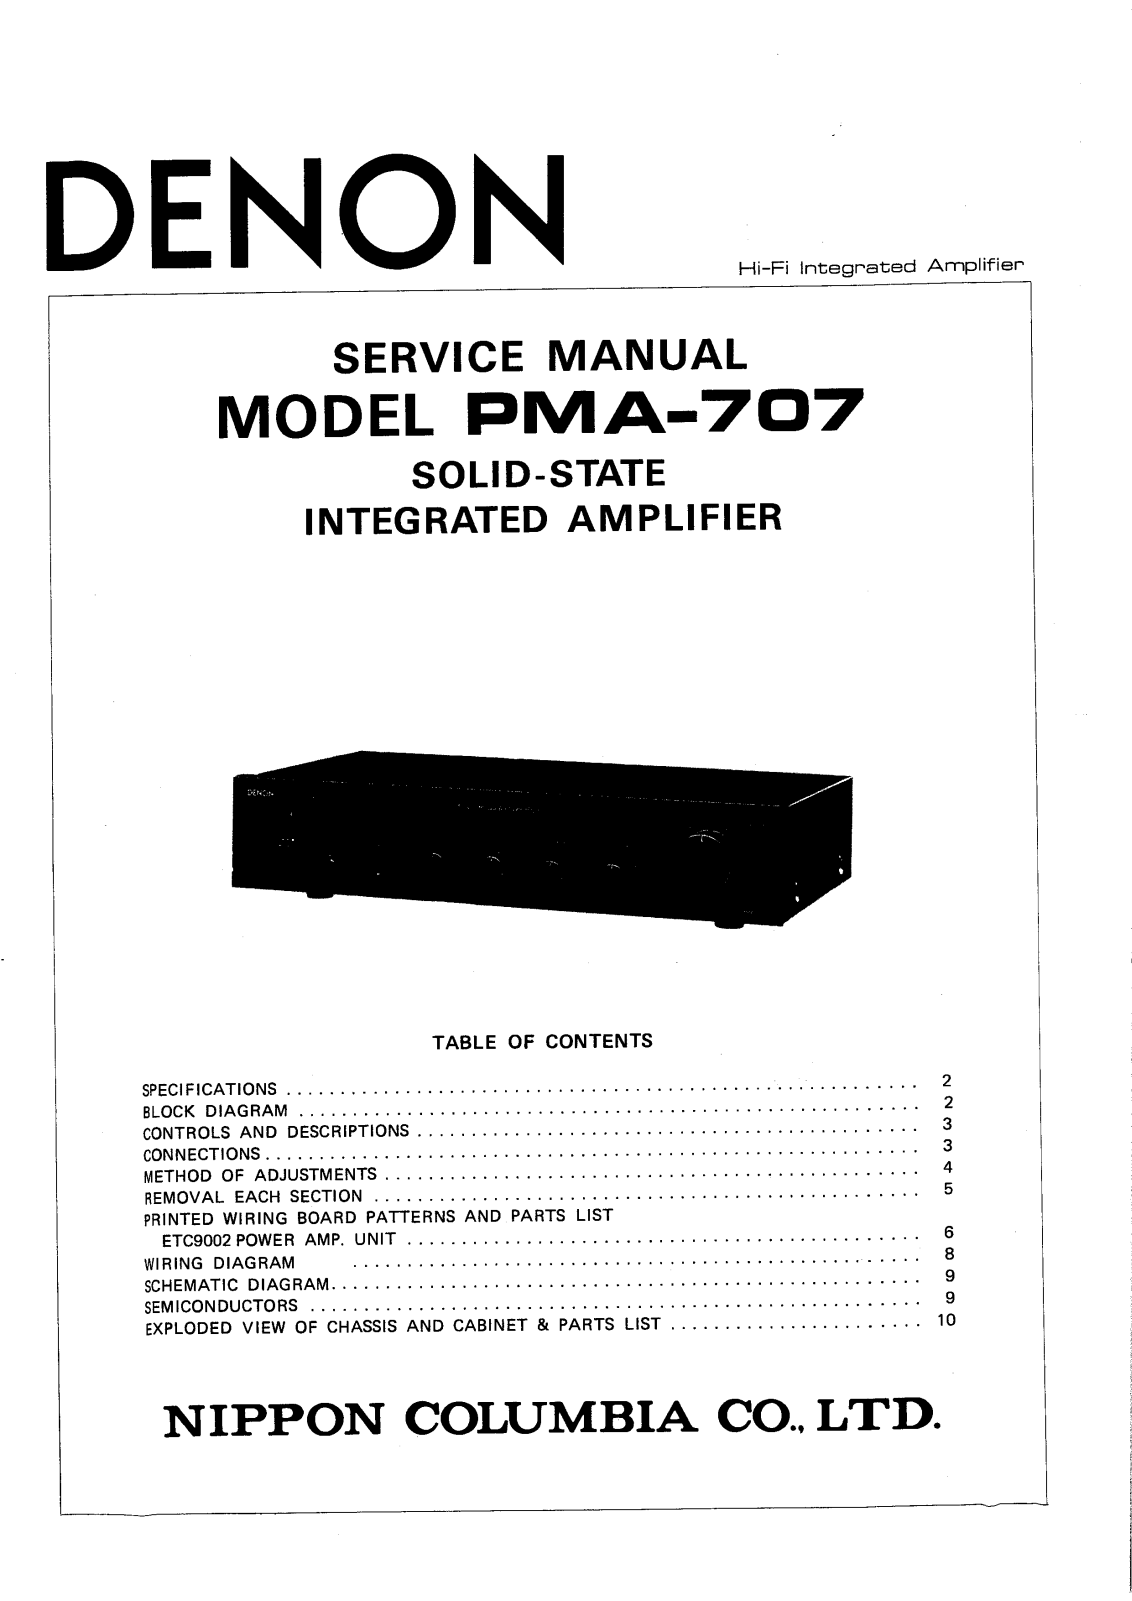 Denon PMA-707 Service Manual